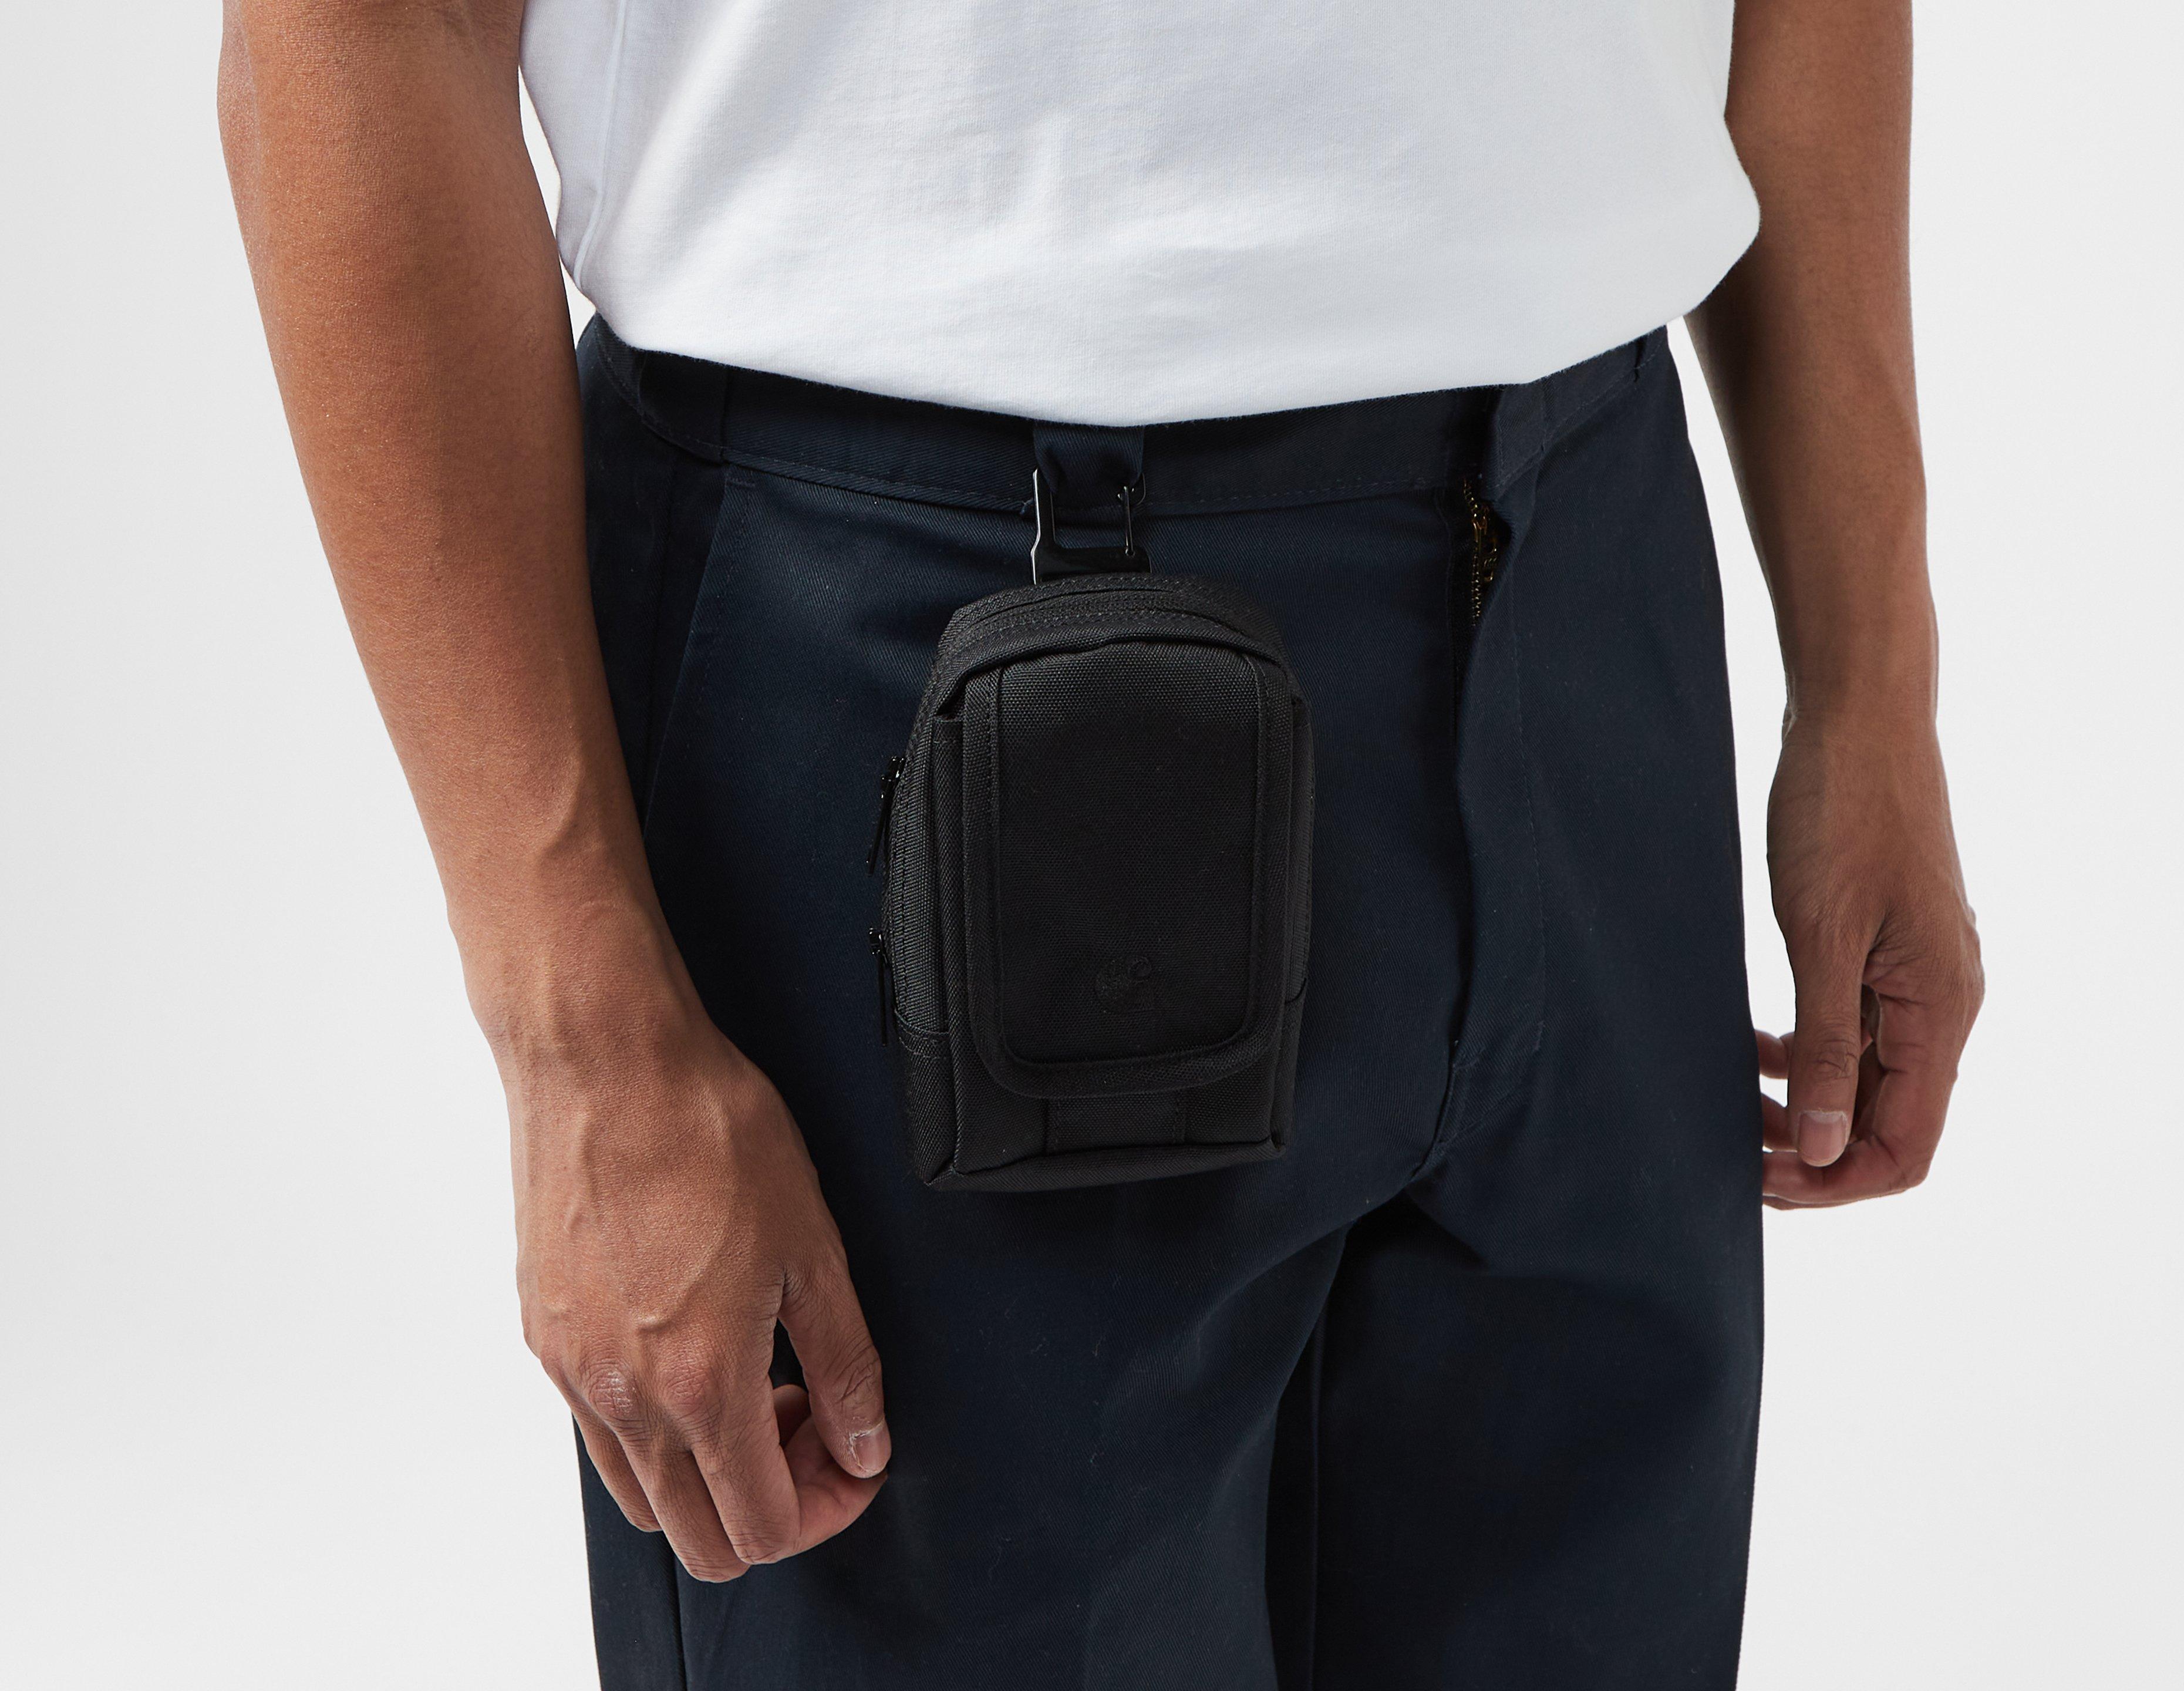 Black Carhartt WIP Sylvan Clip Bag, Healthdesign?